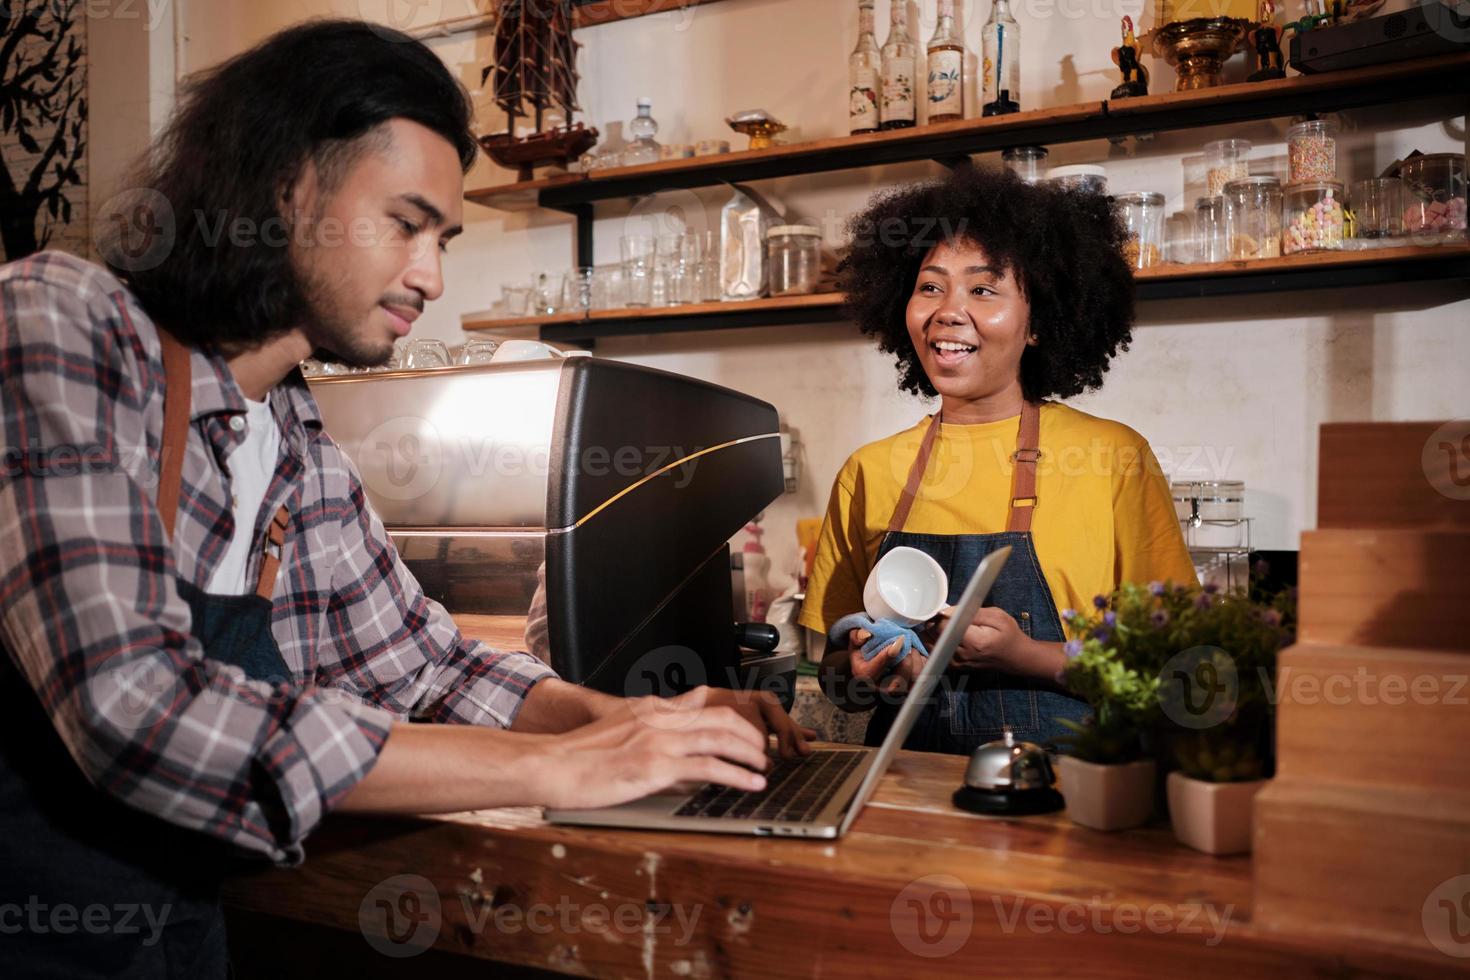 deux partenaires et amis de démarrage d'entreprise de café, une femme afro-américaine et des baristas thaïlandais discutent et sourient joyeusement ensemble au comptoir du café, un emploi de service heureux et un entrepreneur de PME. photo